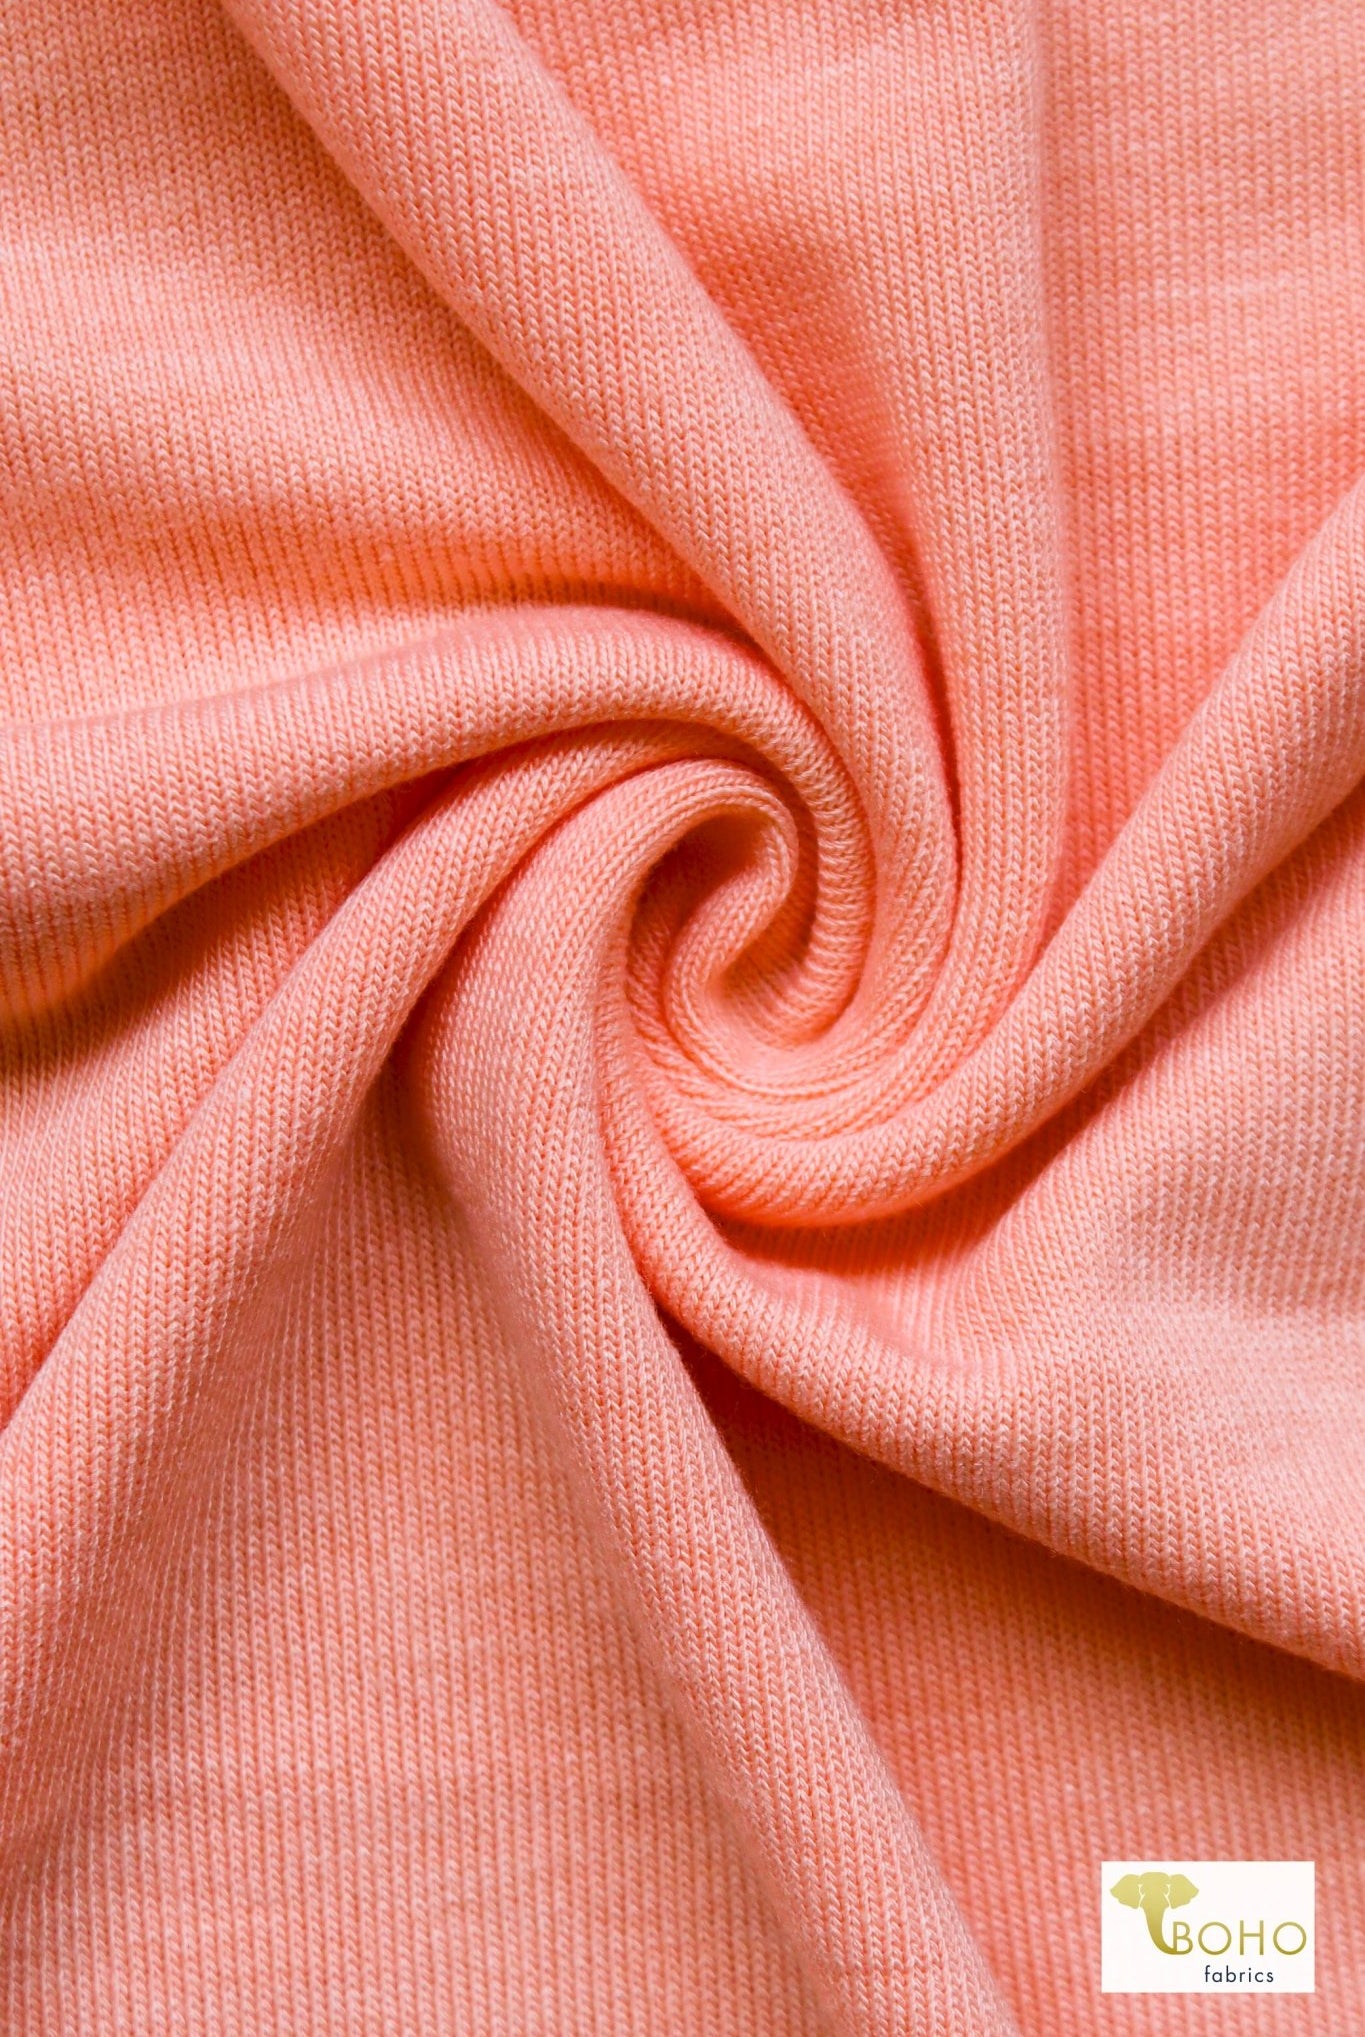 Papaya Peach, Hacci Solid Sweater Knit - Boho Fabrics